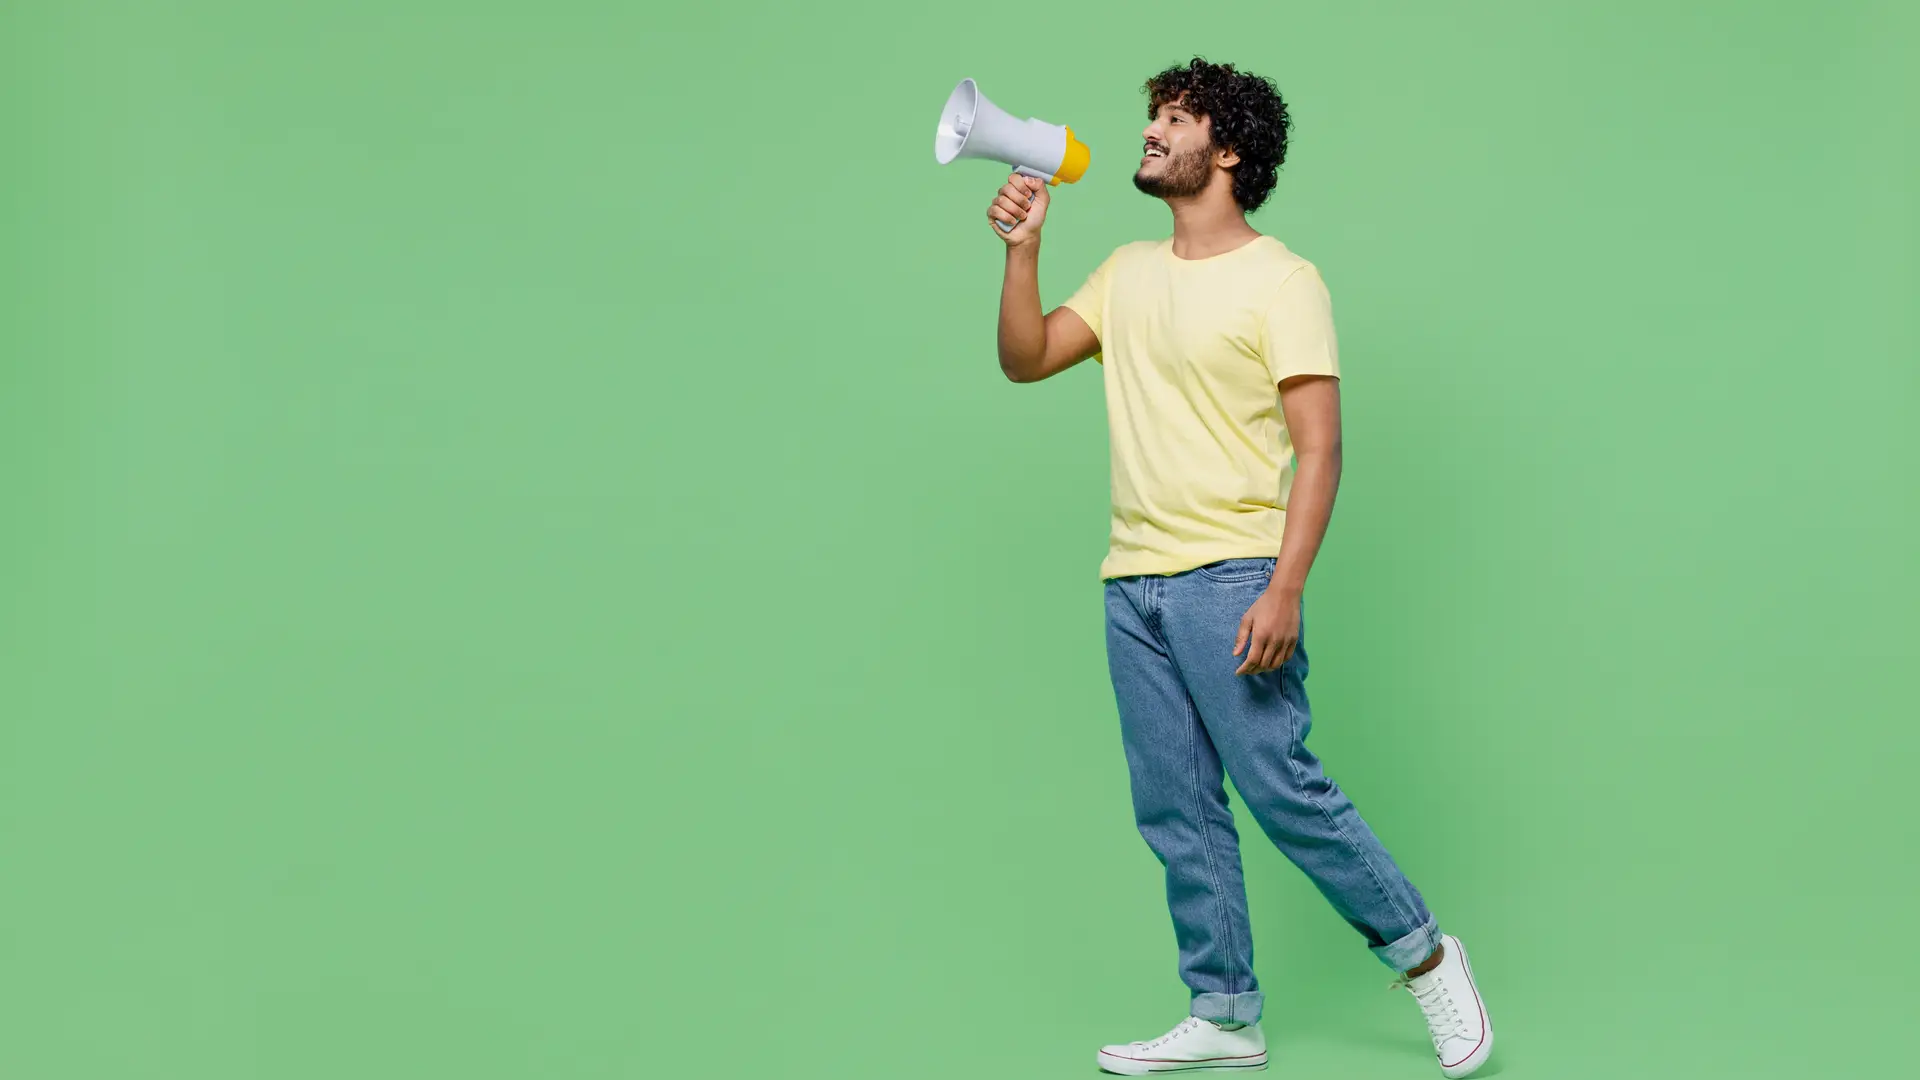 Chico sujetando un megáfono sobre un fondo verde que representa las opiniones de SantéPet